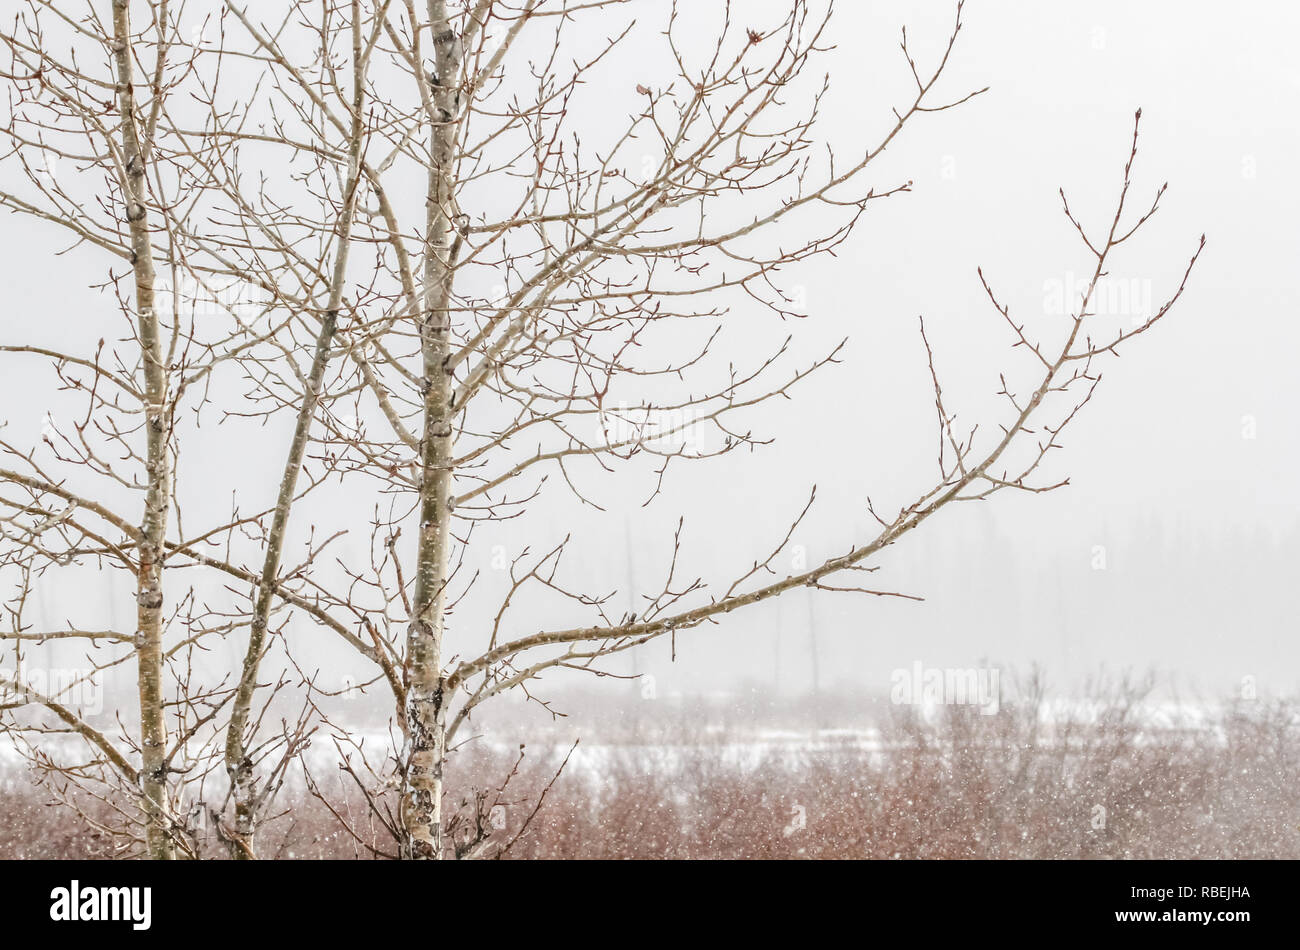 Tempête d'hiver crée la paix et la tranquillité que les arbres dormir dans les Montagnes Rocheuses au lacs Vermilion, dans le parc national Banff, Alberta, Canada. Banque D'Images